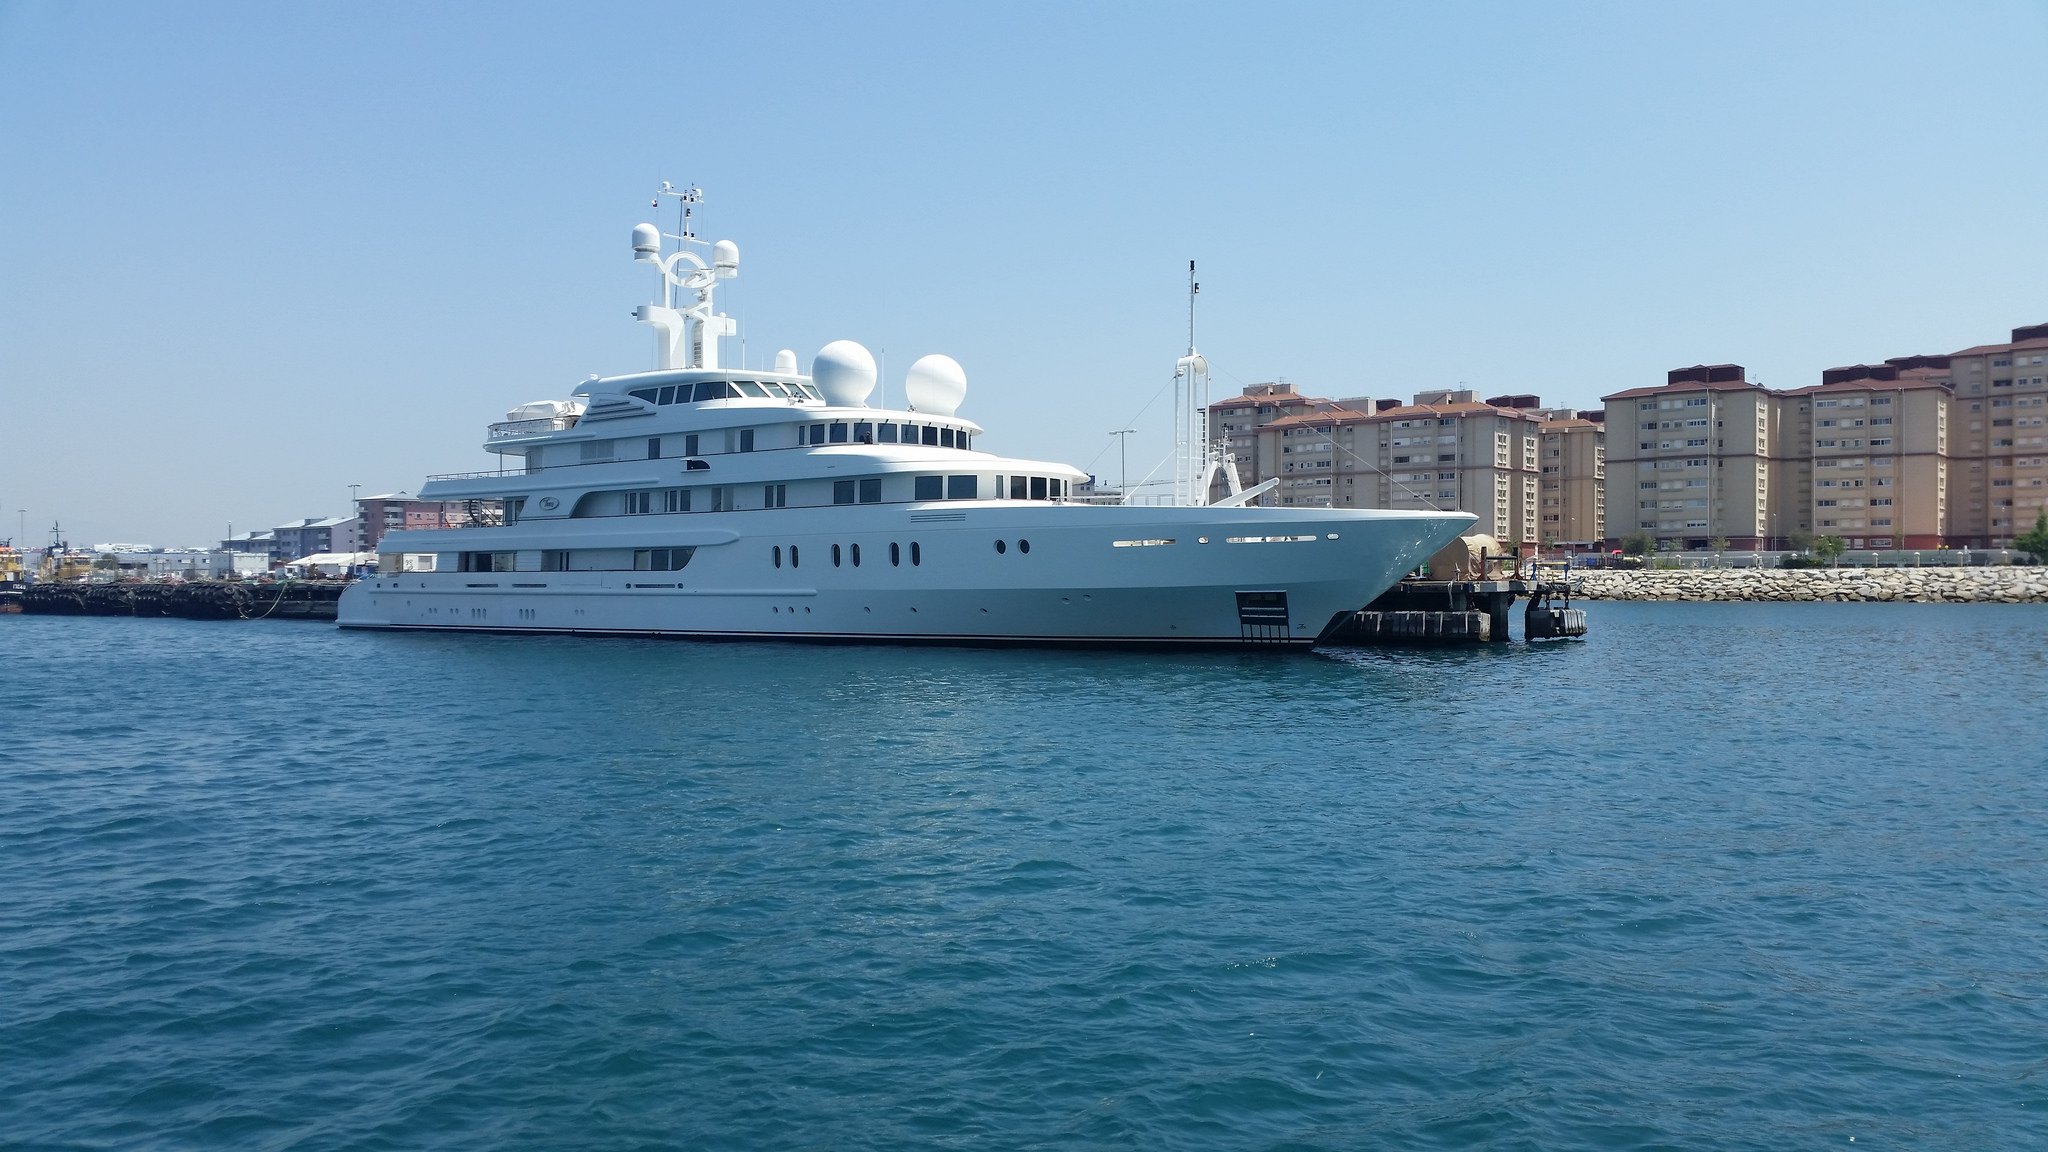 TUEQ Yacht • King Salman $100M Superyacht • Van Der Giessen • 2006